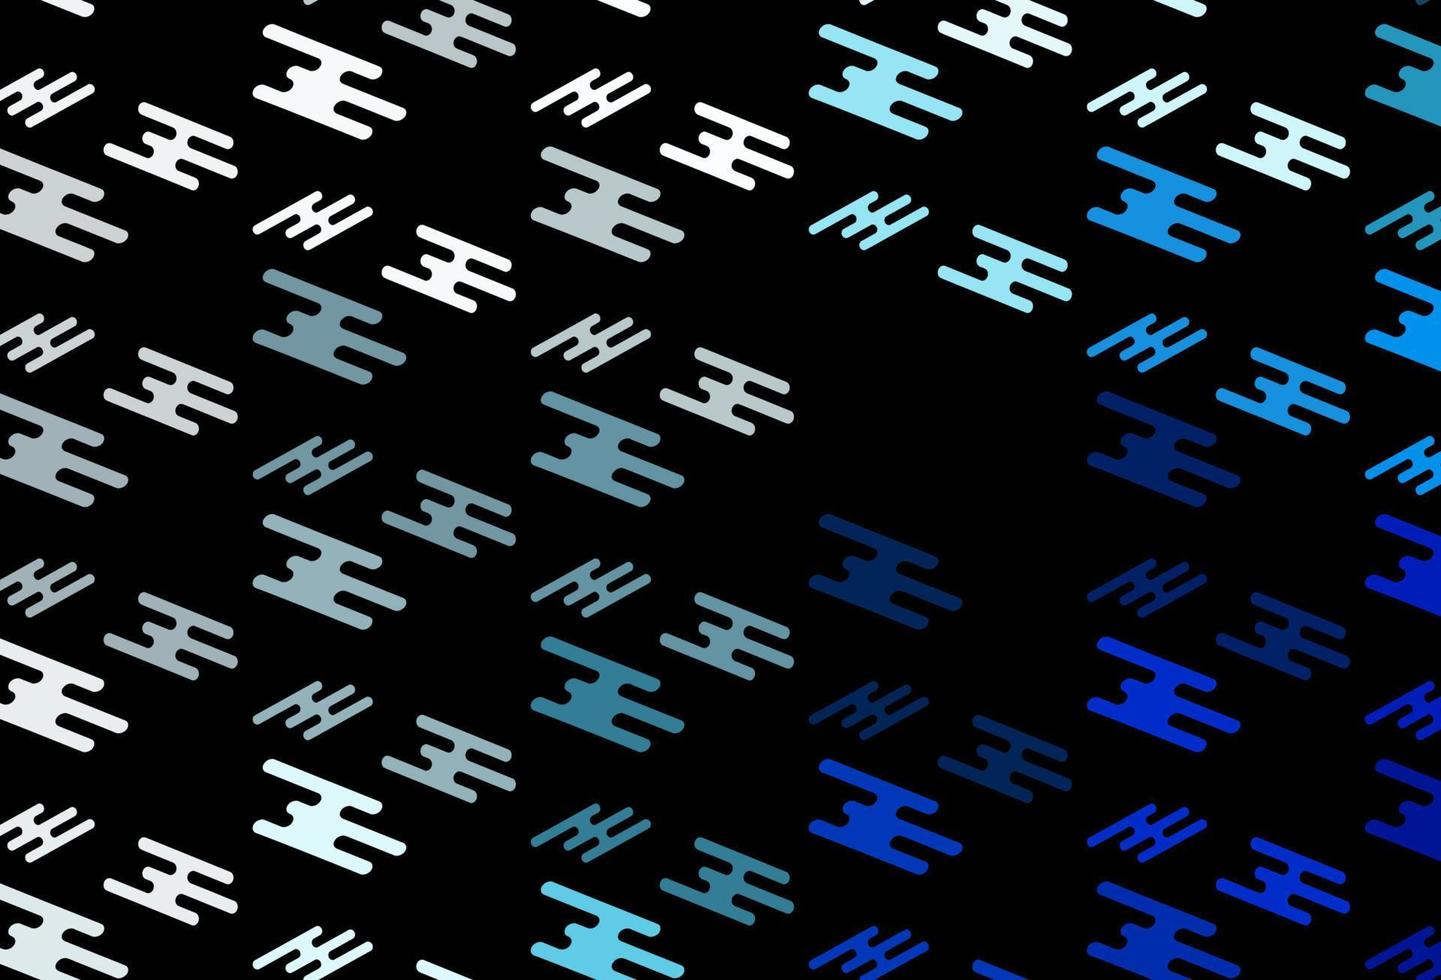 patrón de vector azul oscuro con líneas estrechas.